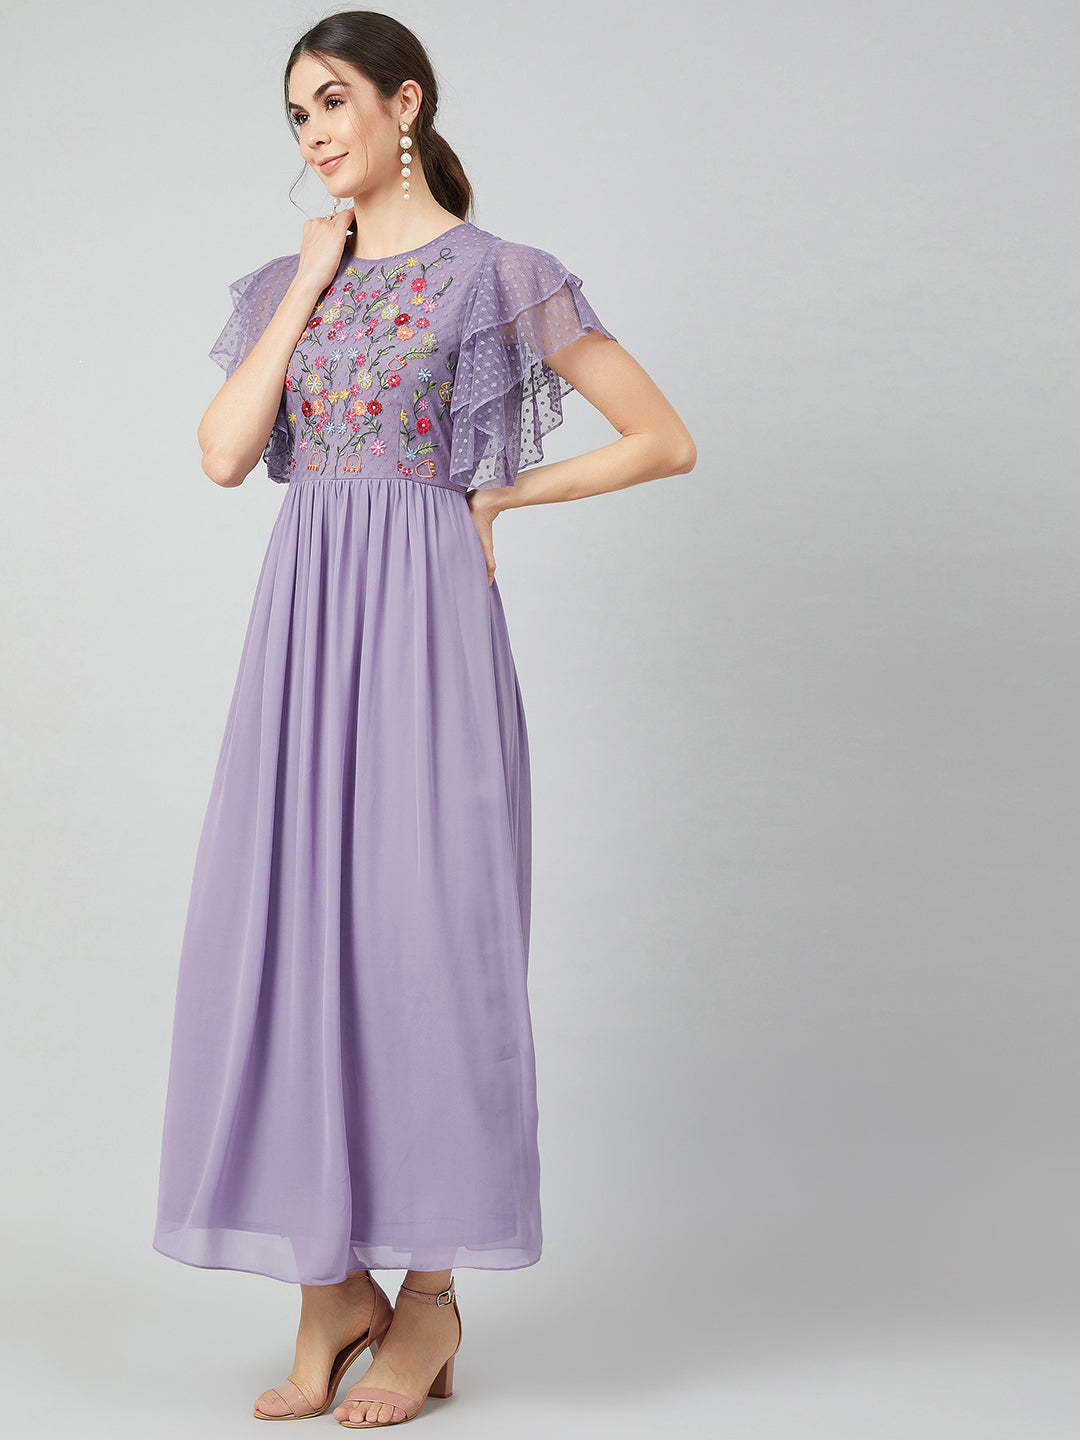 Athena Purple Floral Printed Maxi Dress - Athena Lifestyle